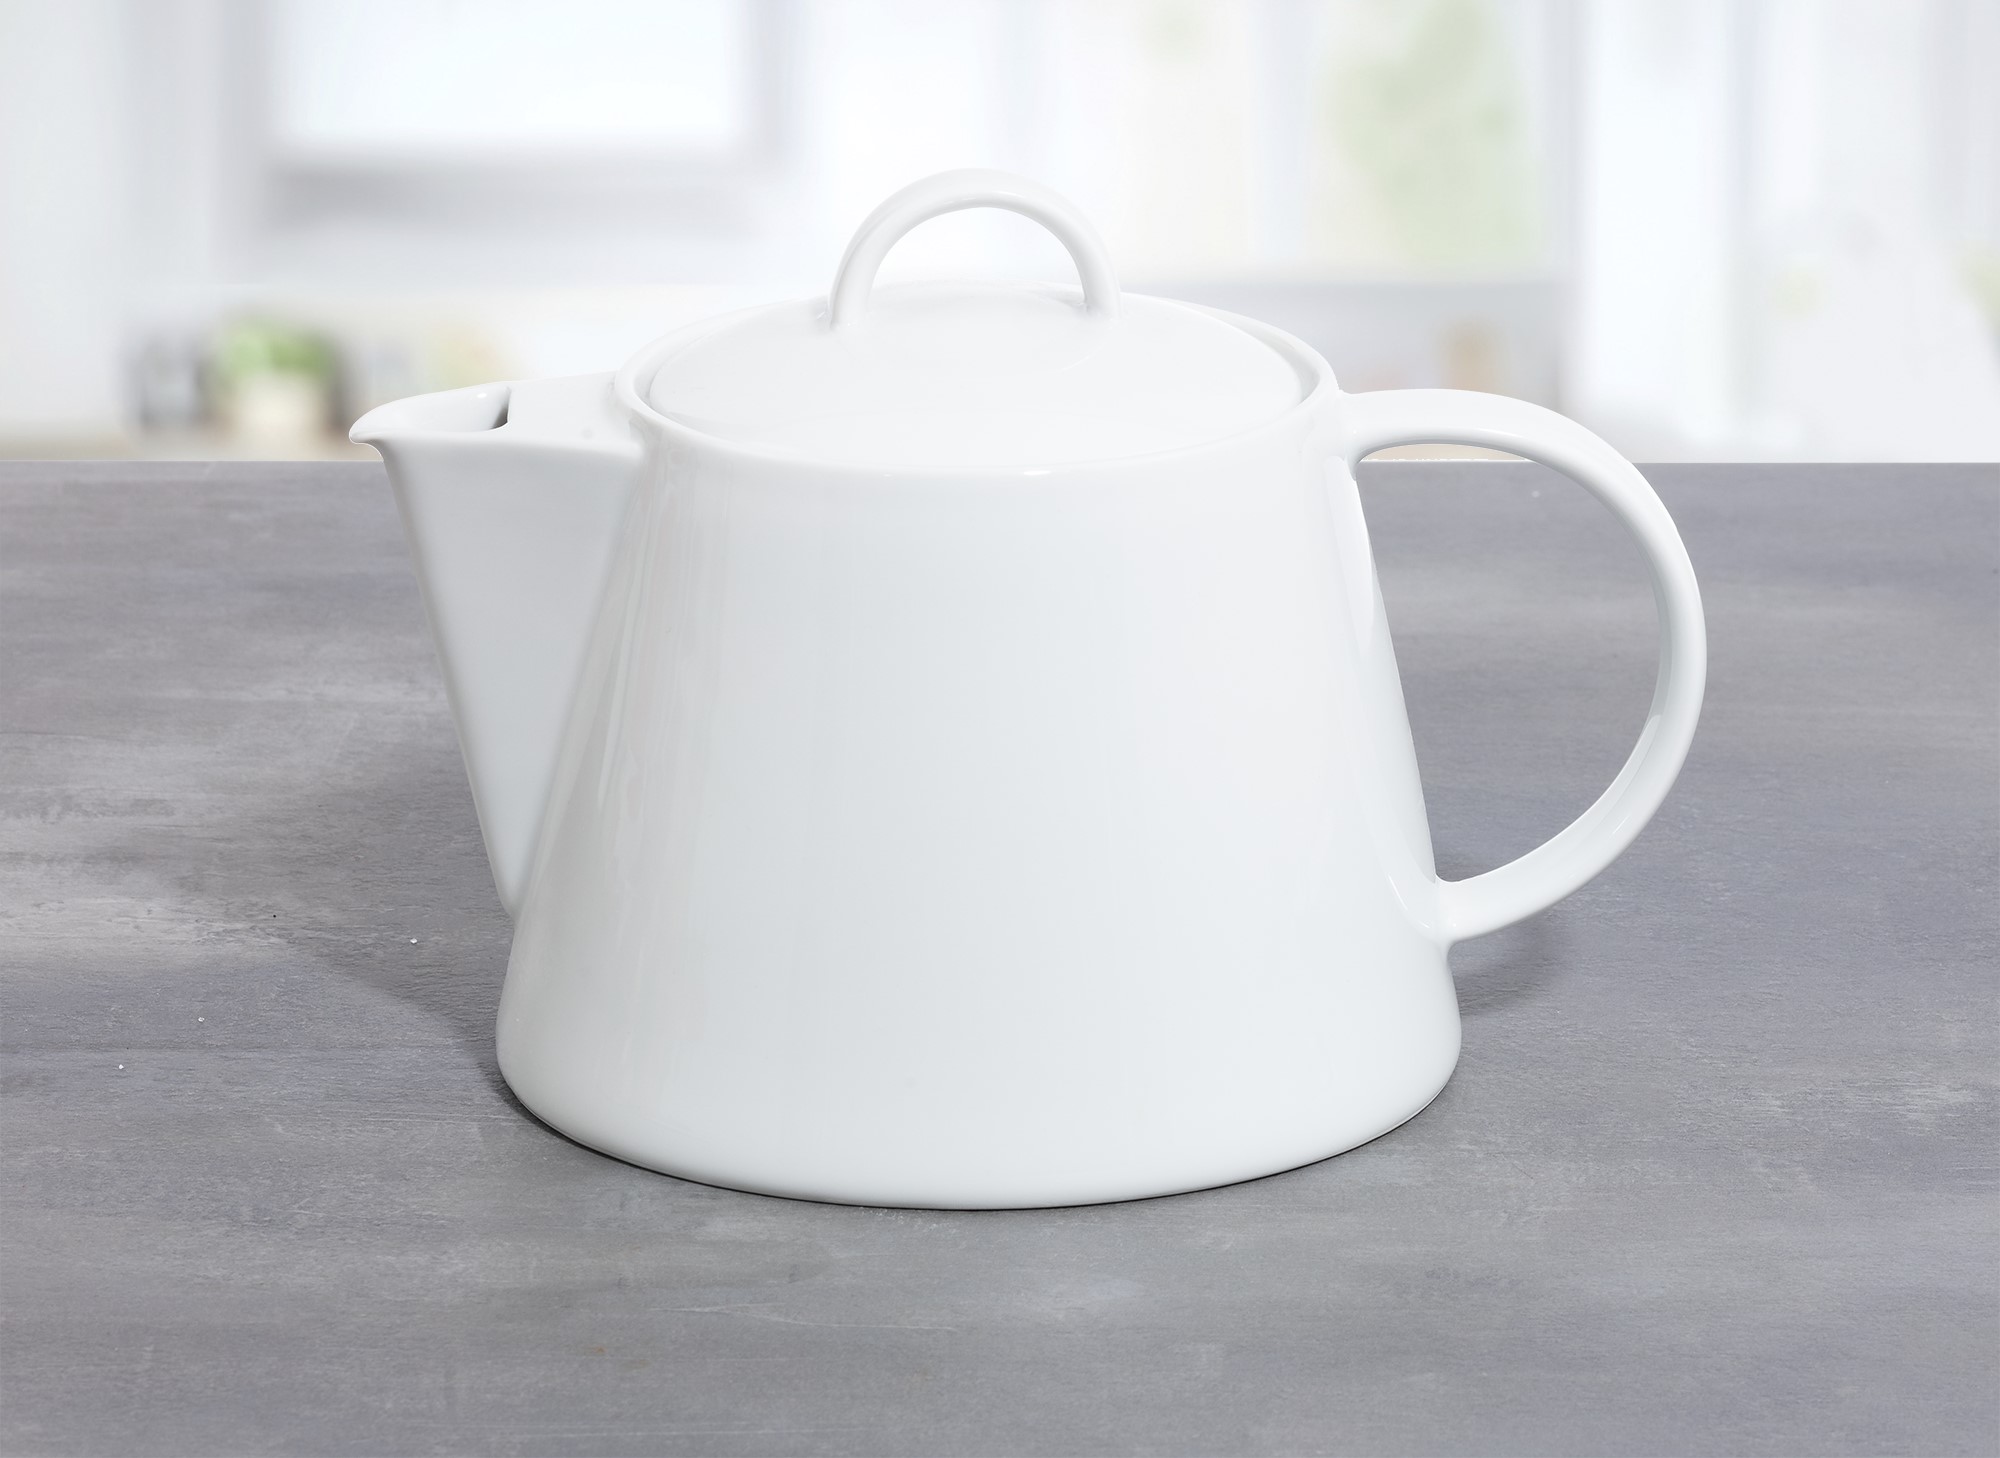 Teekanne/Kaffeekanne SOLEA von caterado, Porzellan, weiß. Höhe ohne Deckel 11,6 cm (mit 16,2 cm). Länge x Breite = 16,5 x 22,5 cm.